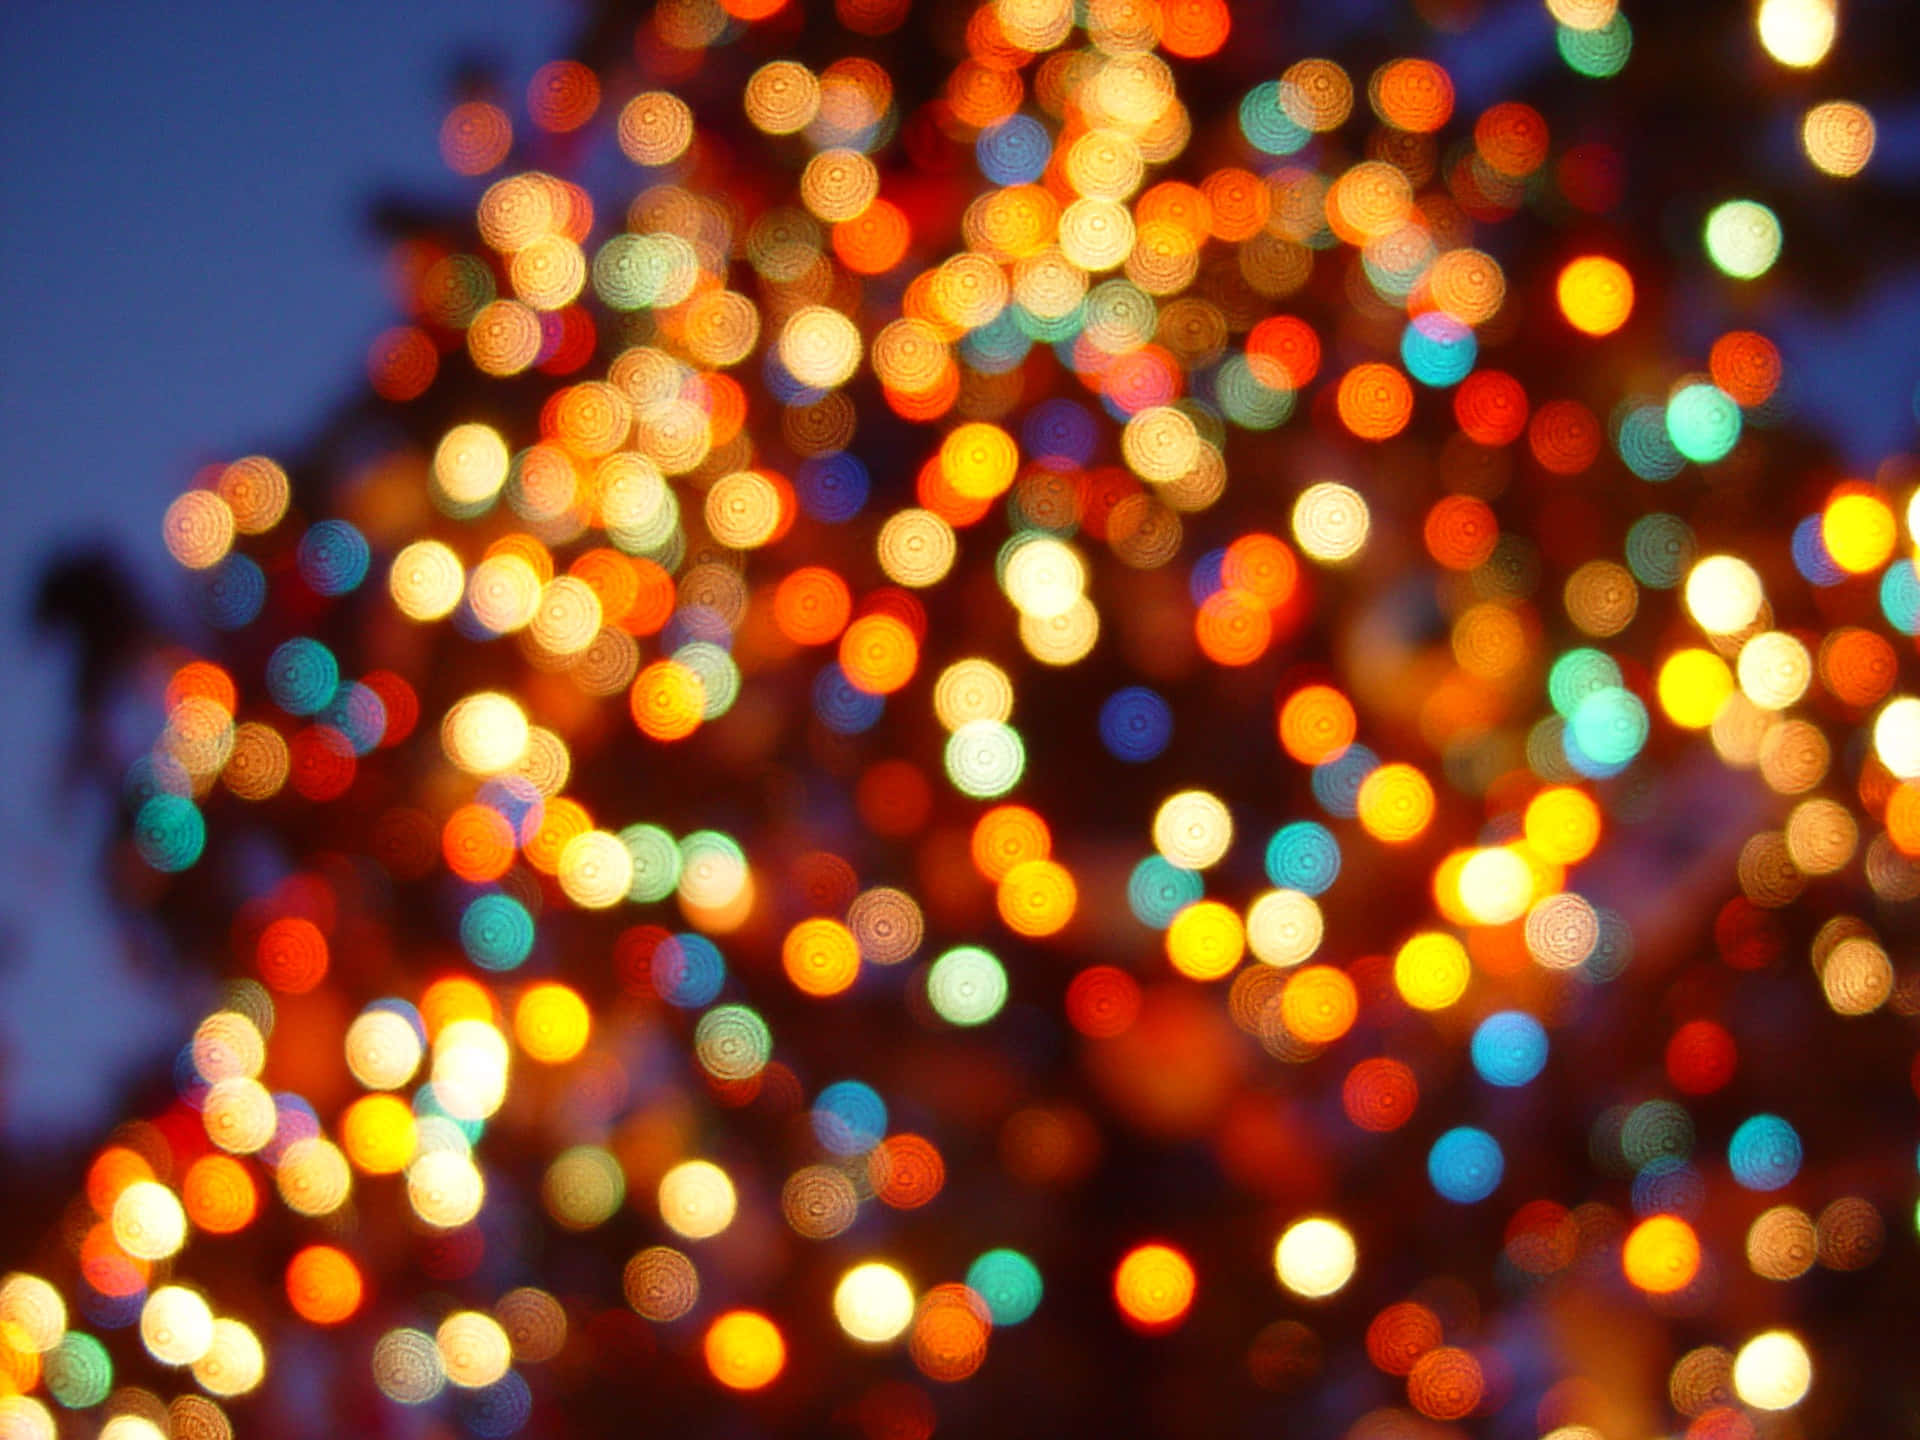 Lucinatalizie Sfocate Su Immagine Dell'albero Di Natale